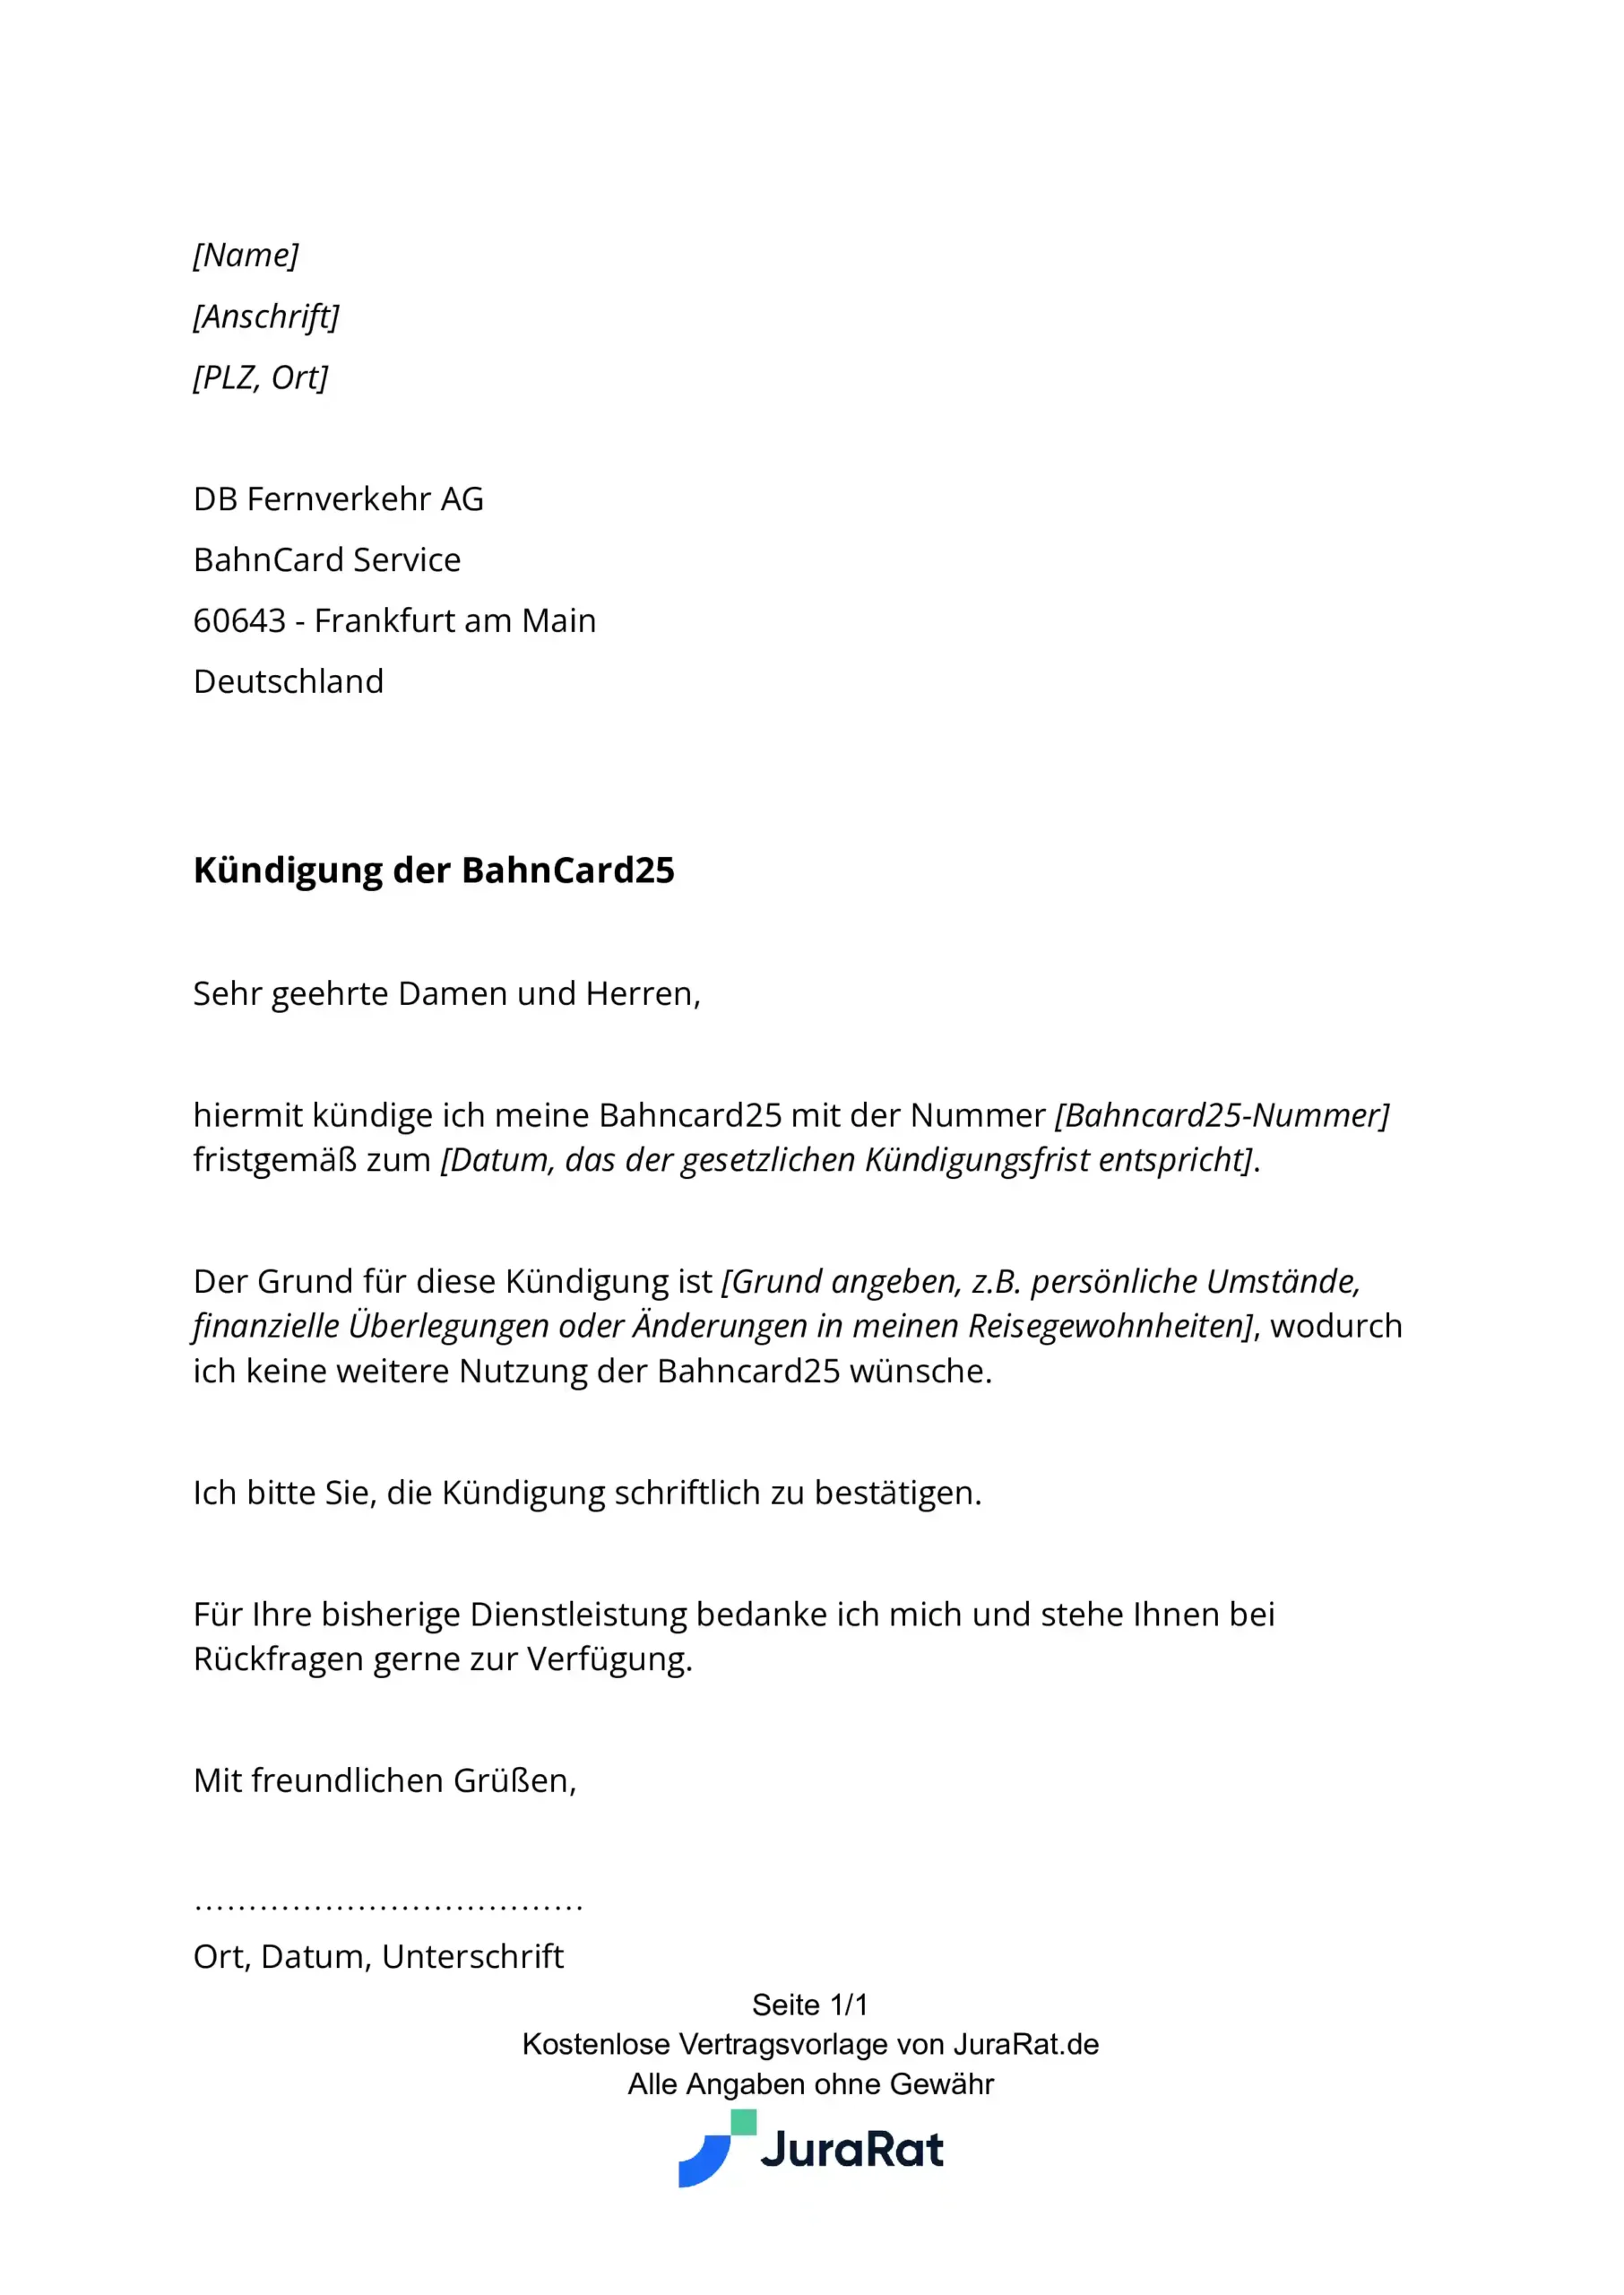 BahnCard Kündigung: So sieht das Kündigungsschreiben von JuraRat aus.